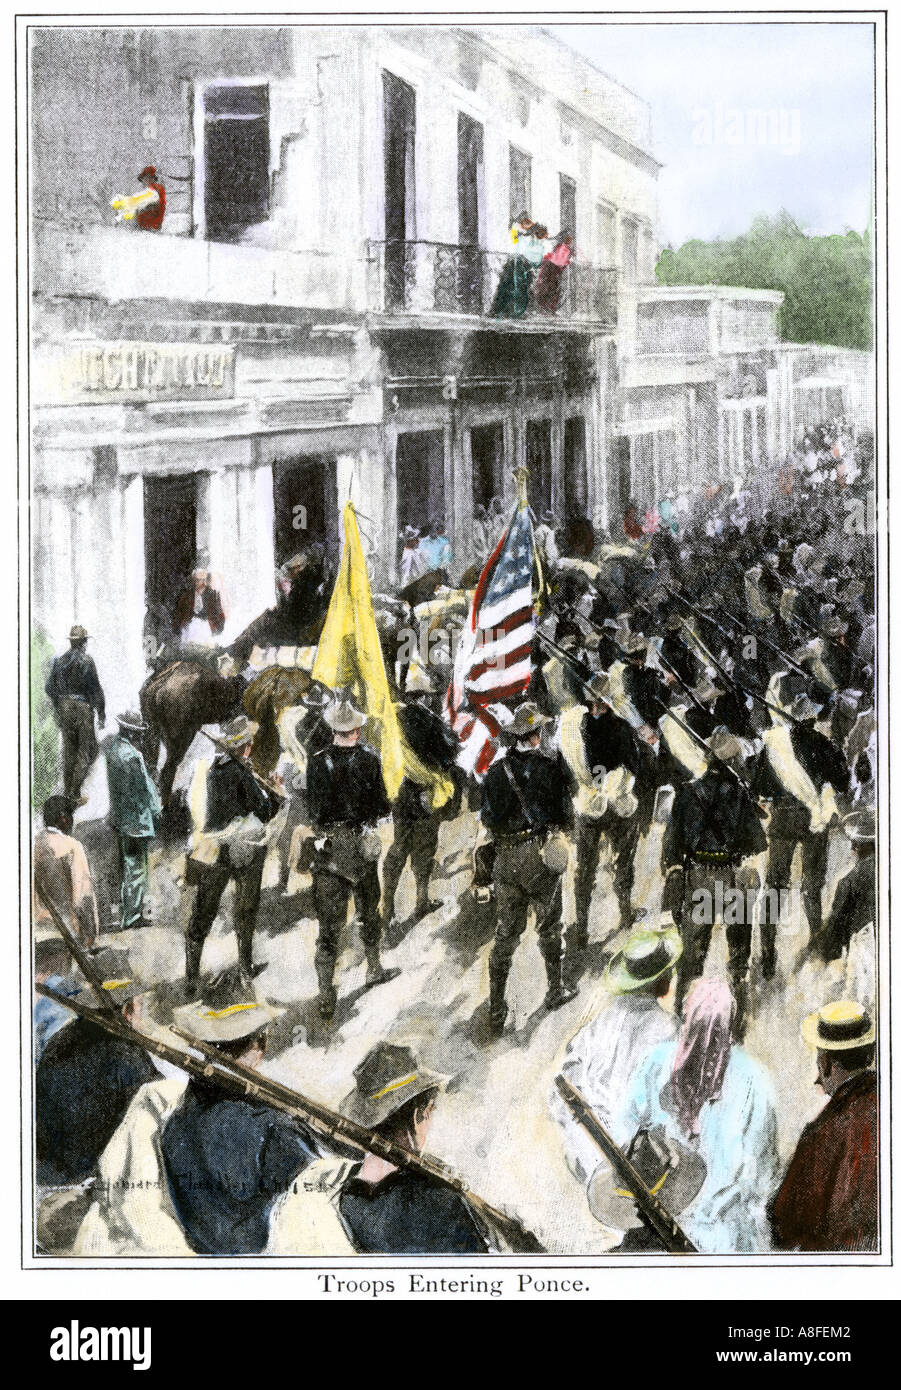 US-Truppen in Ponce, Puerto Rico im spanisch-amerikanischen Krieg von 1898. Handcolorierte halftone einer Abbildung Stockfoto